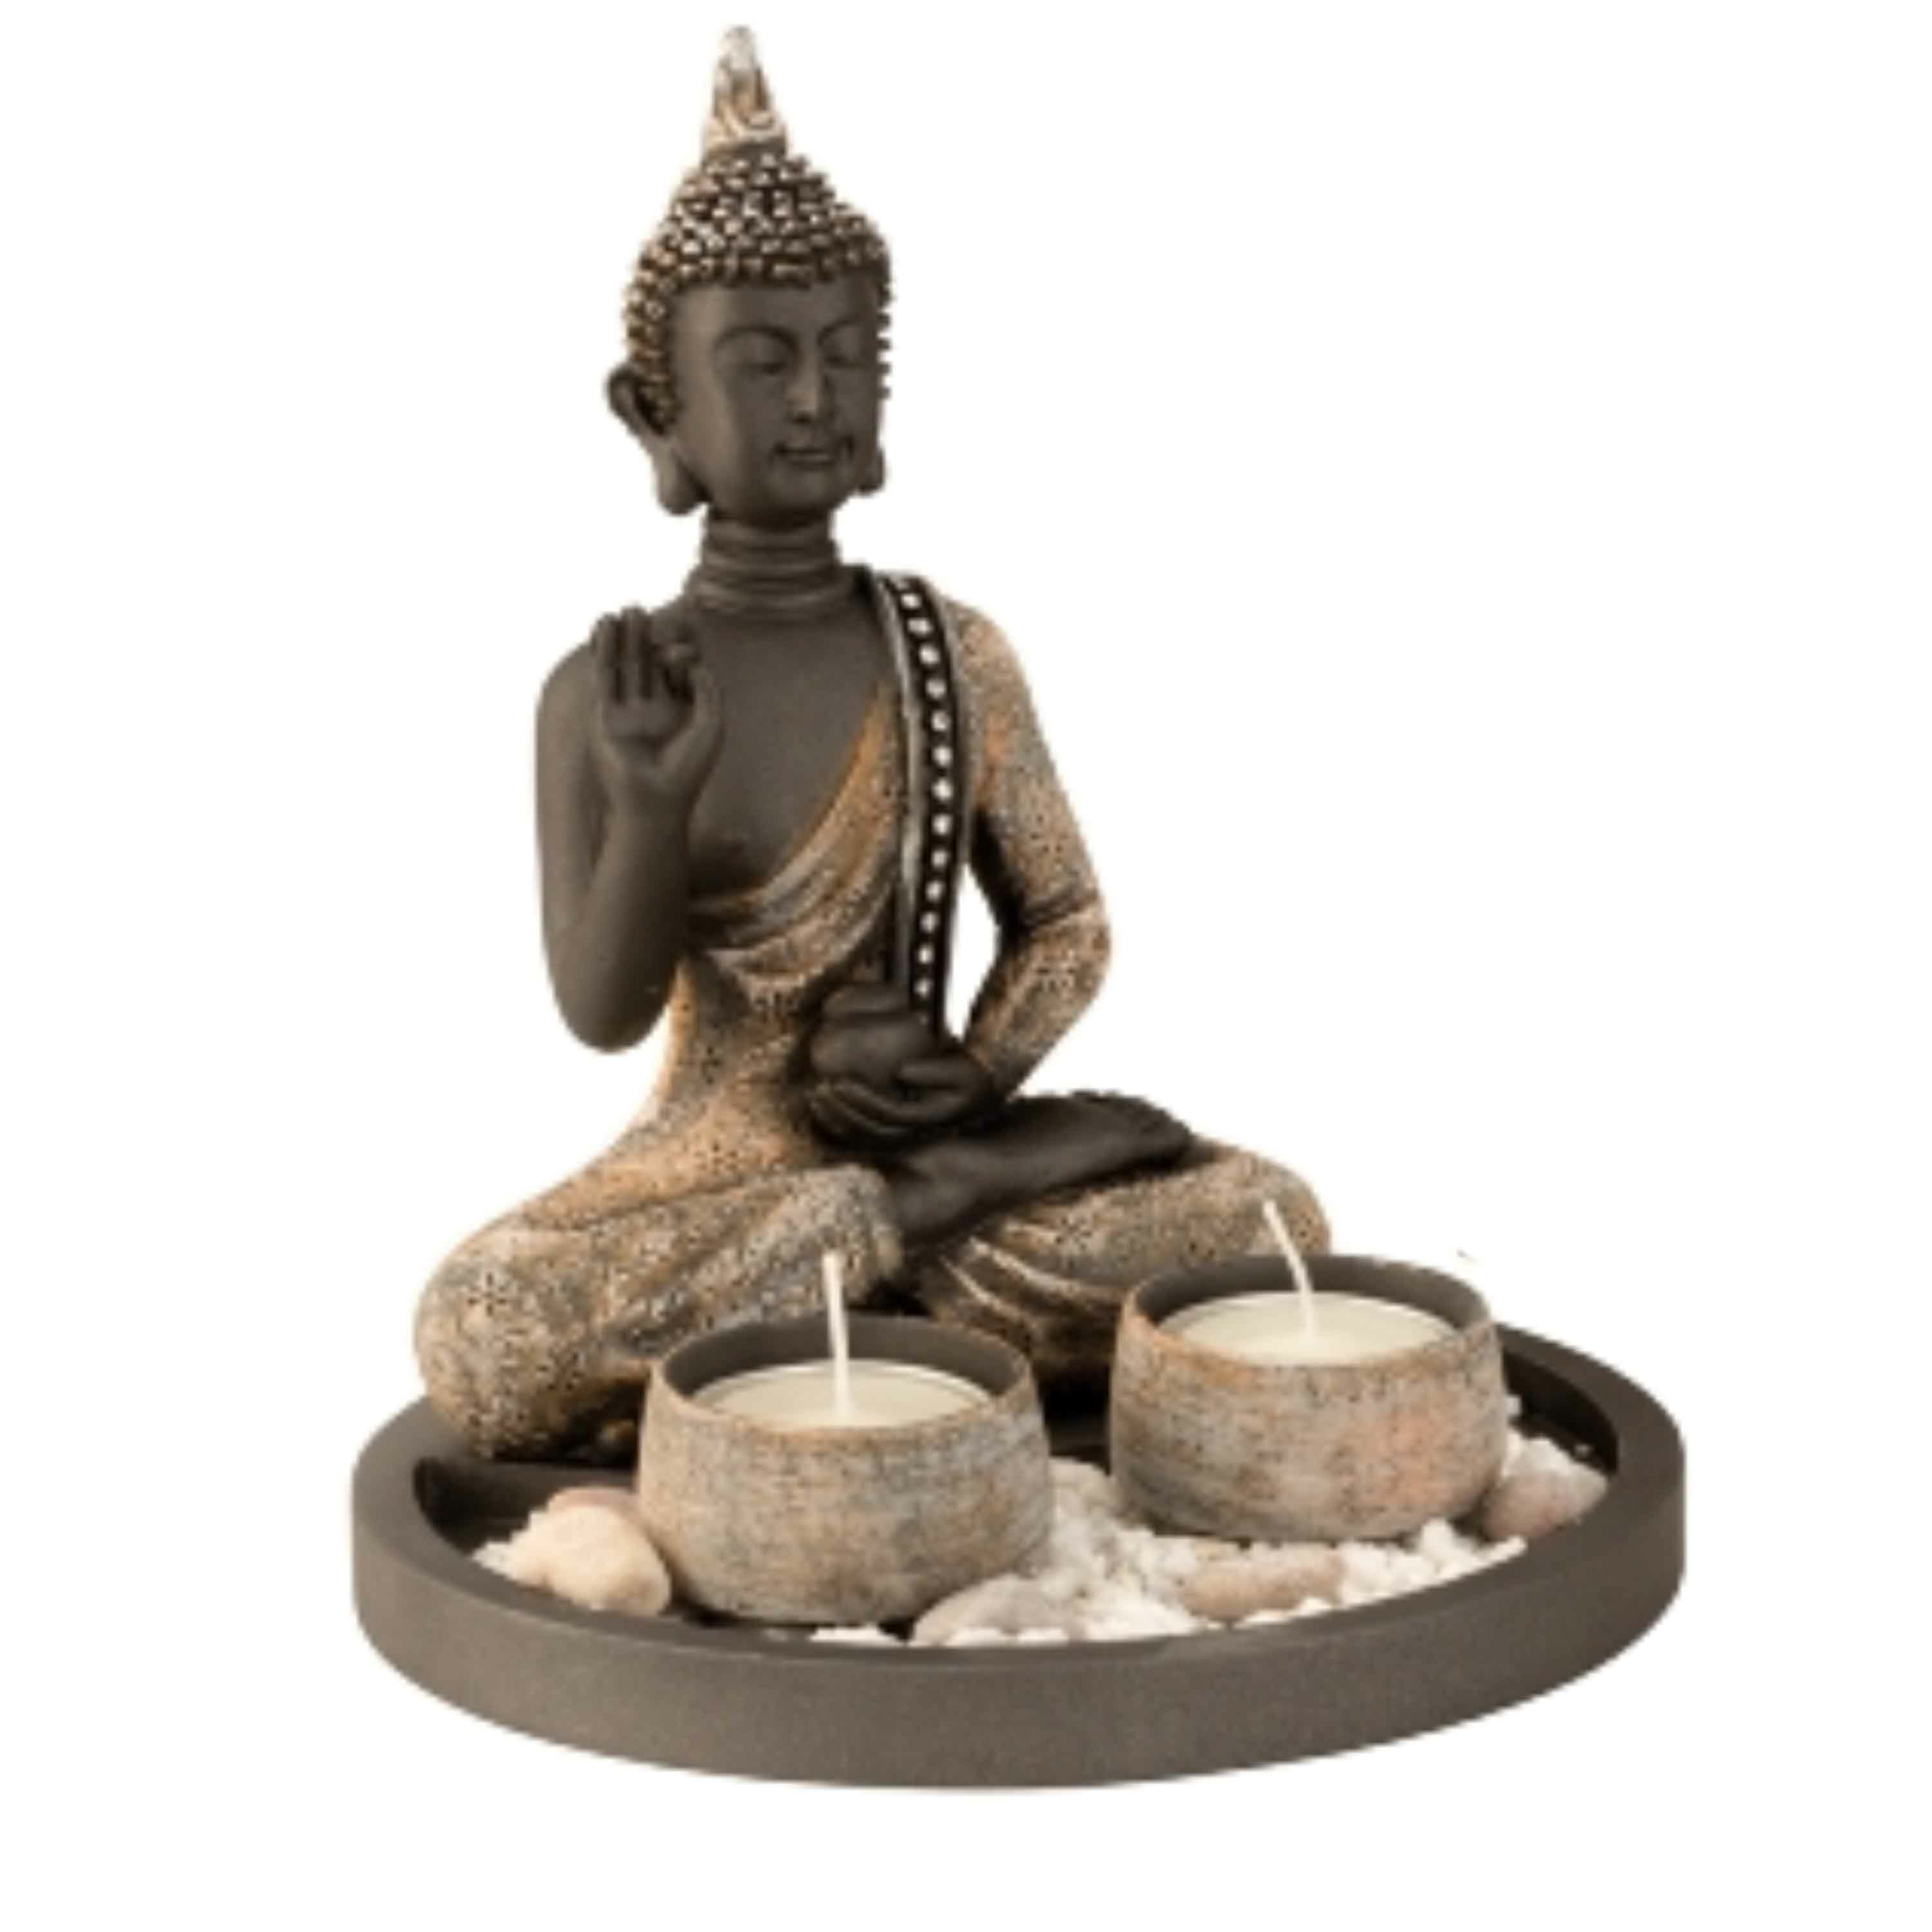 Boeddha beeldje met 2 kaarshouders op schaal - kunststeen - goud/grijs - 18 x 21 cm - deco artikel -